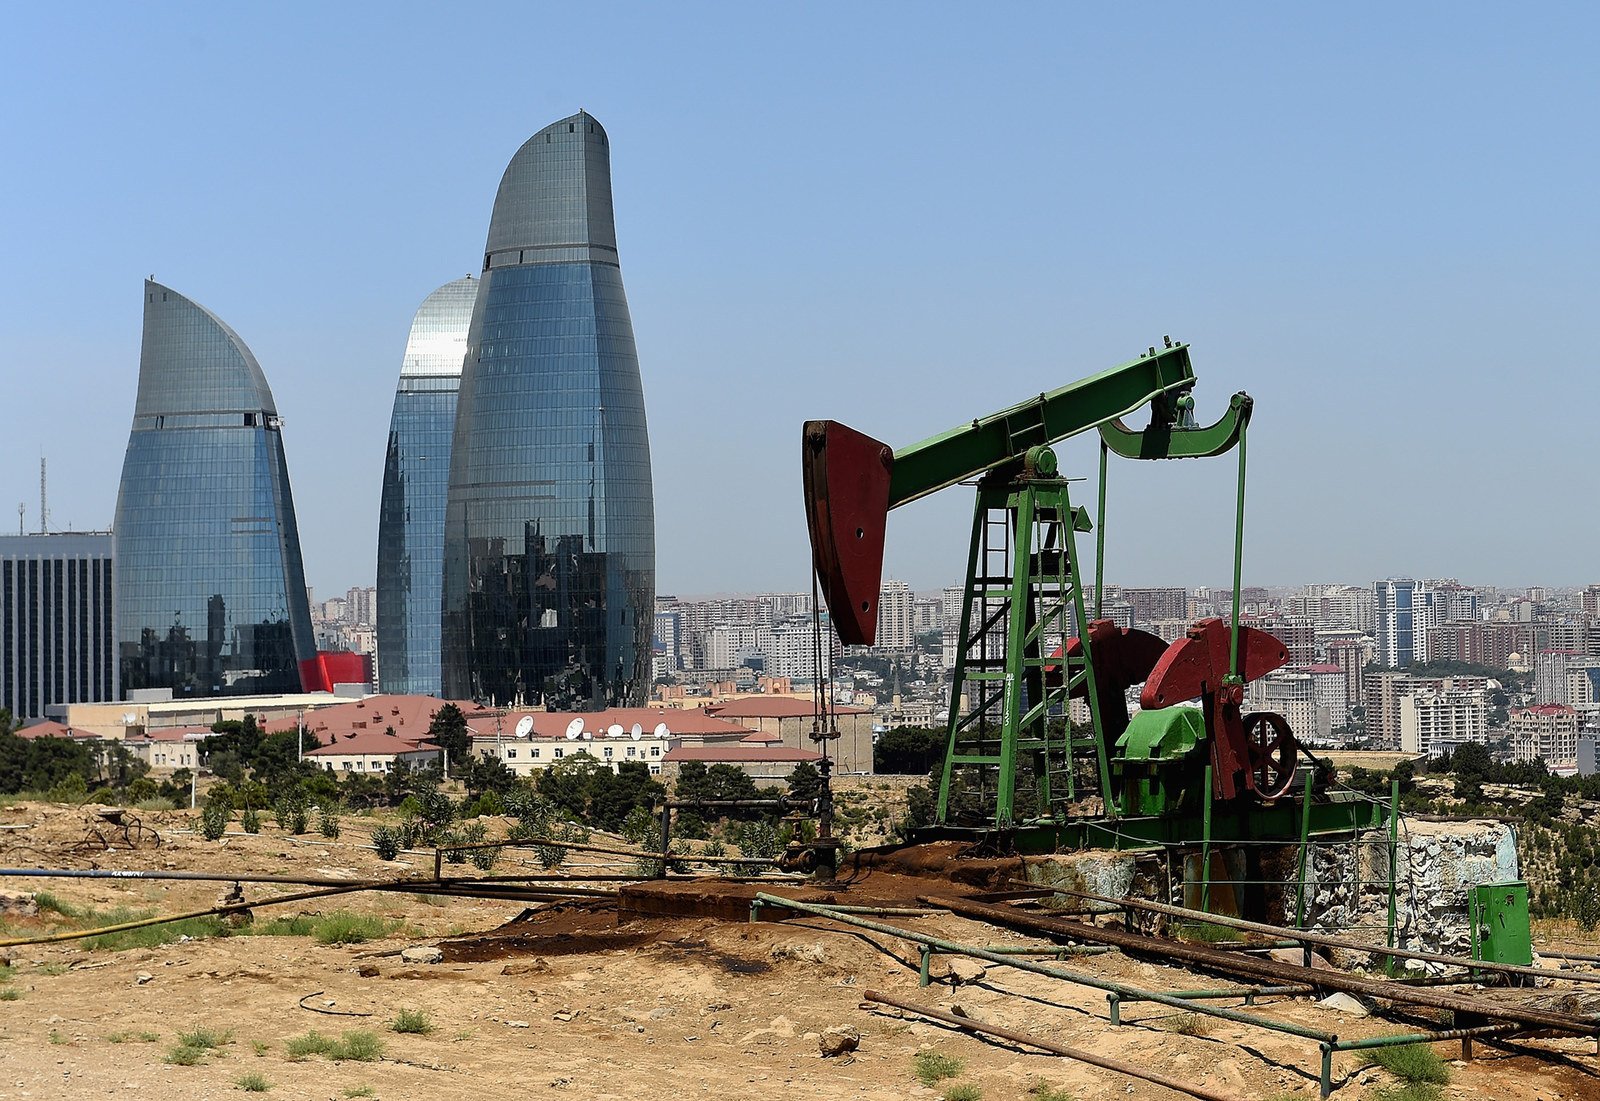 Fondos soberanos de inversión, el caso Azerbaiyán